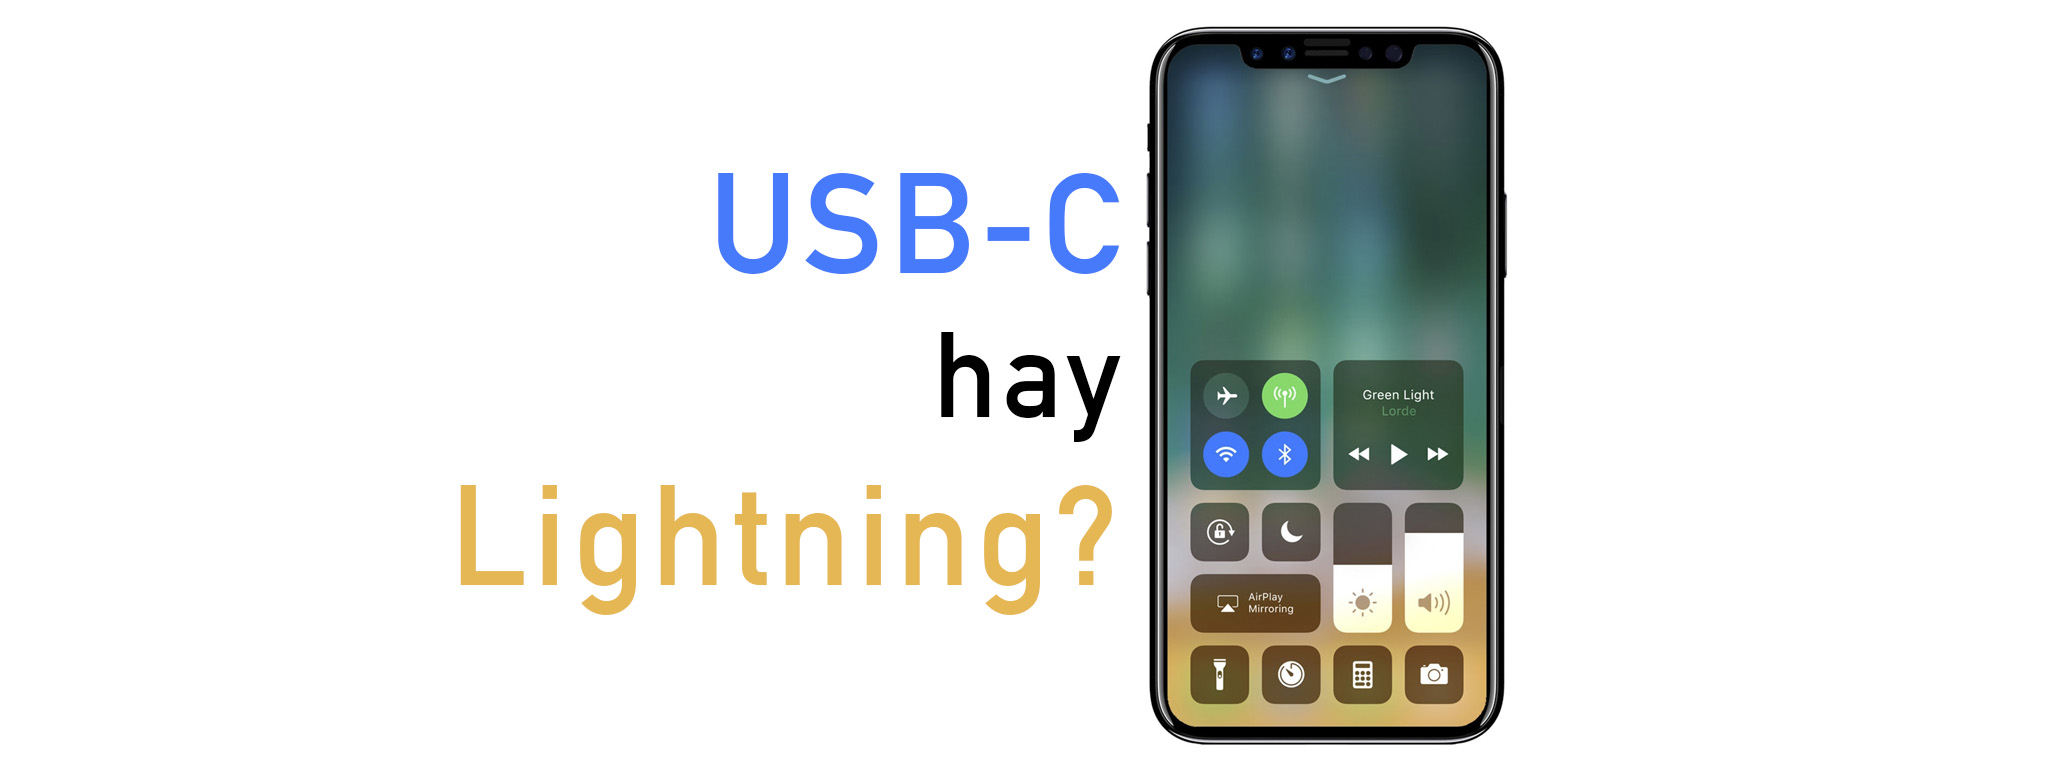 [Hỏi Tinh Tế] Anh em thích iPhone mới dùng USB-C hay Lightning?